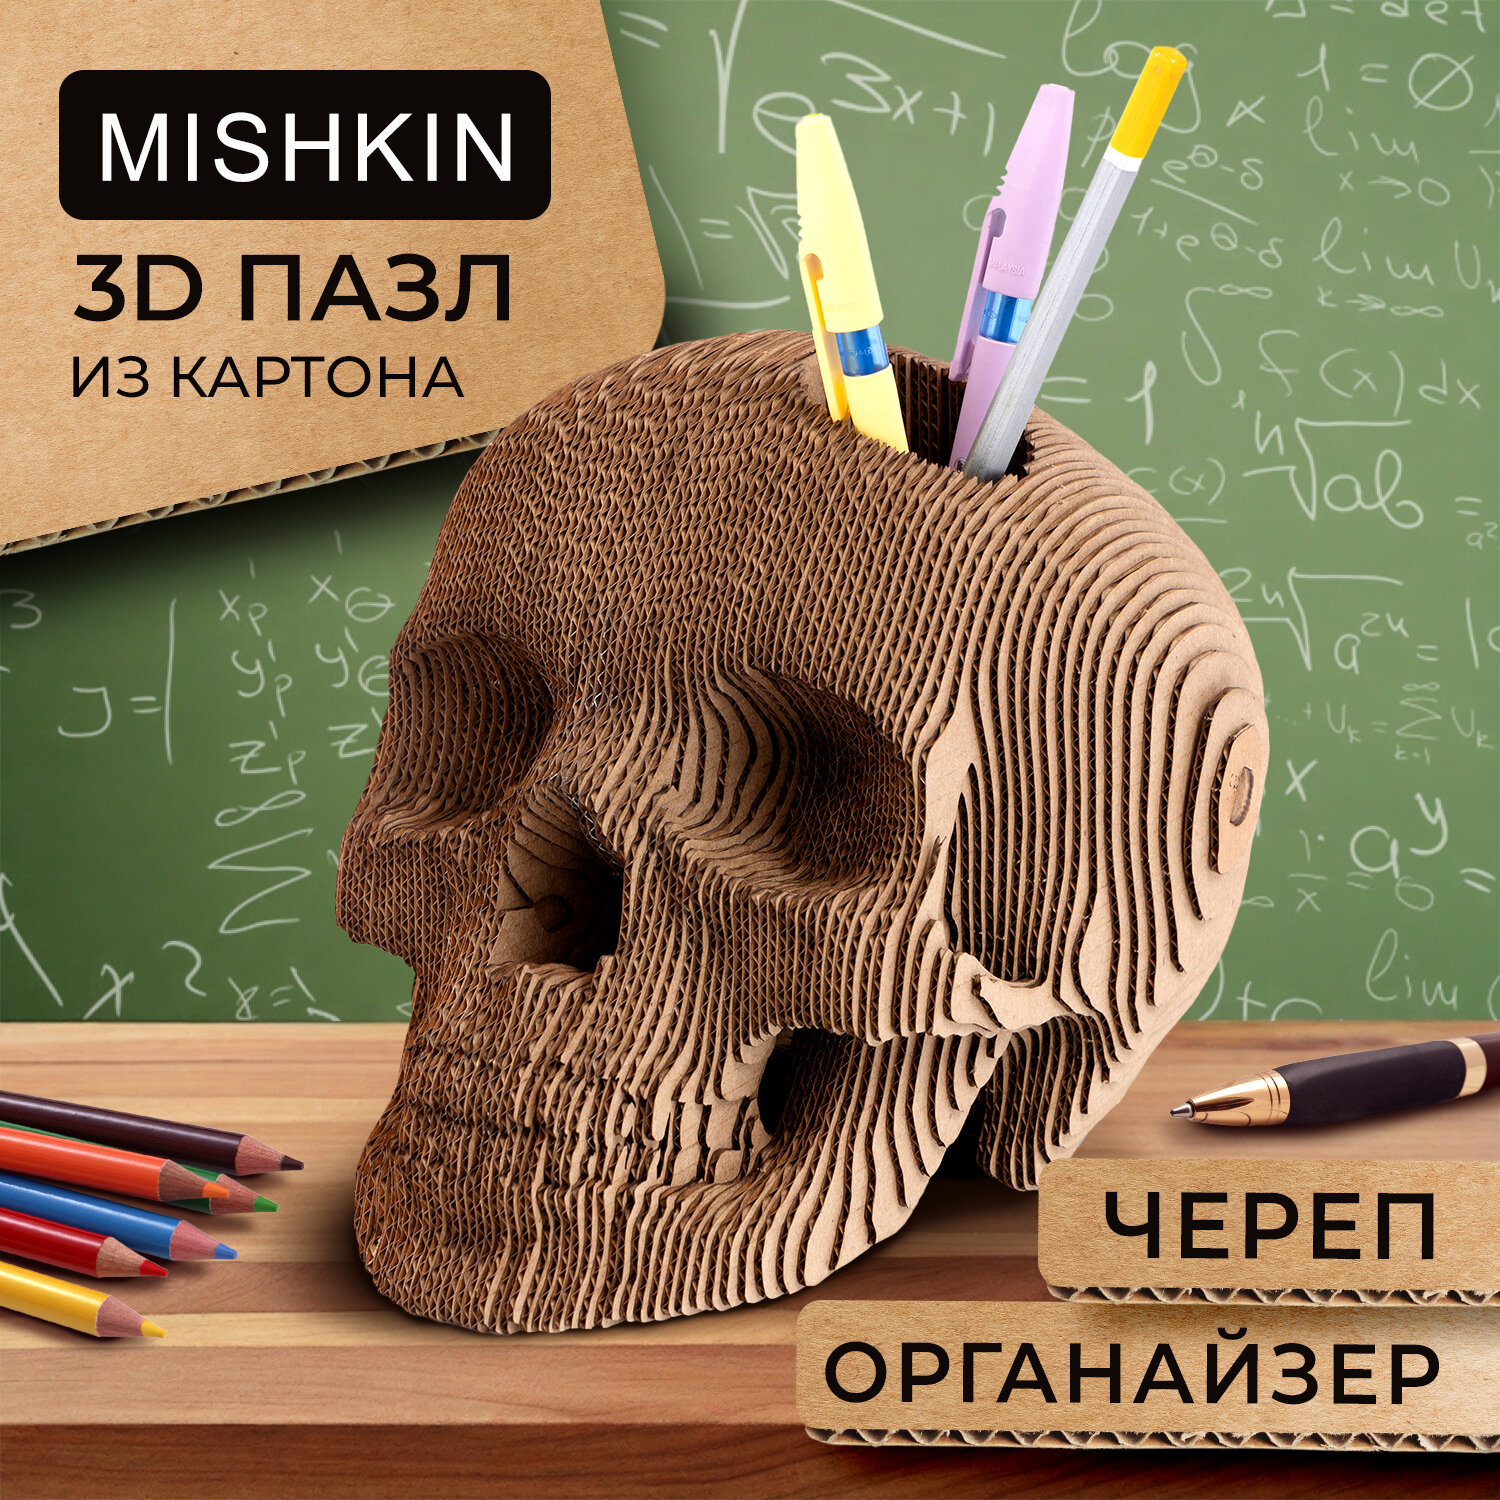 Mishkin Studio" - Картонный 3d Пазл-Конструктор "Череп Органайзер